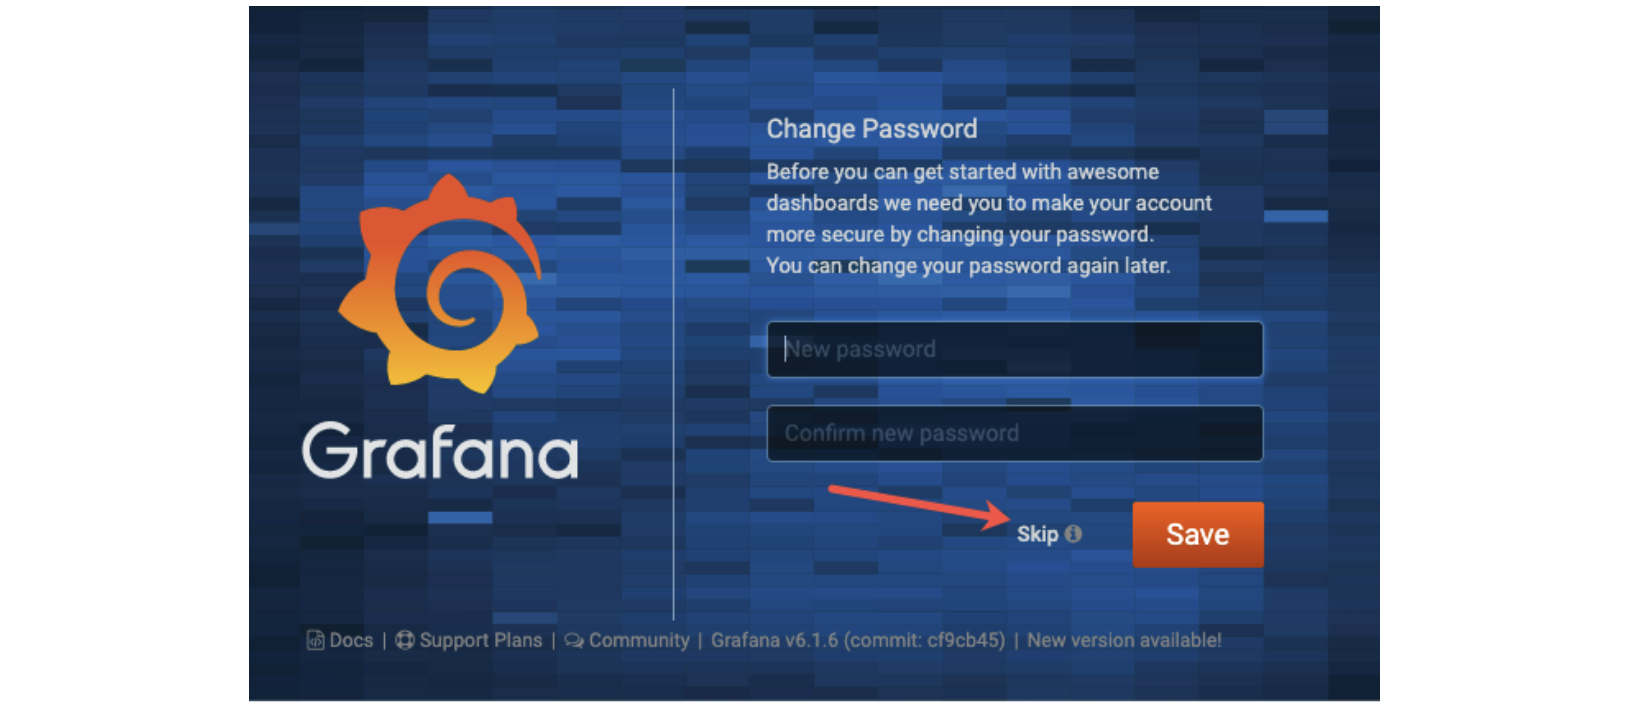 Grafana Change Password